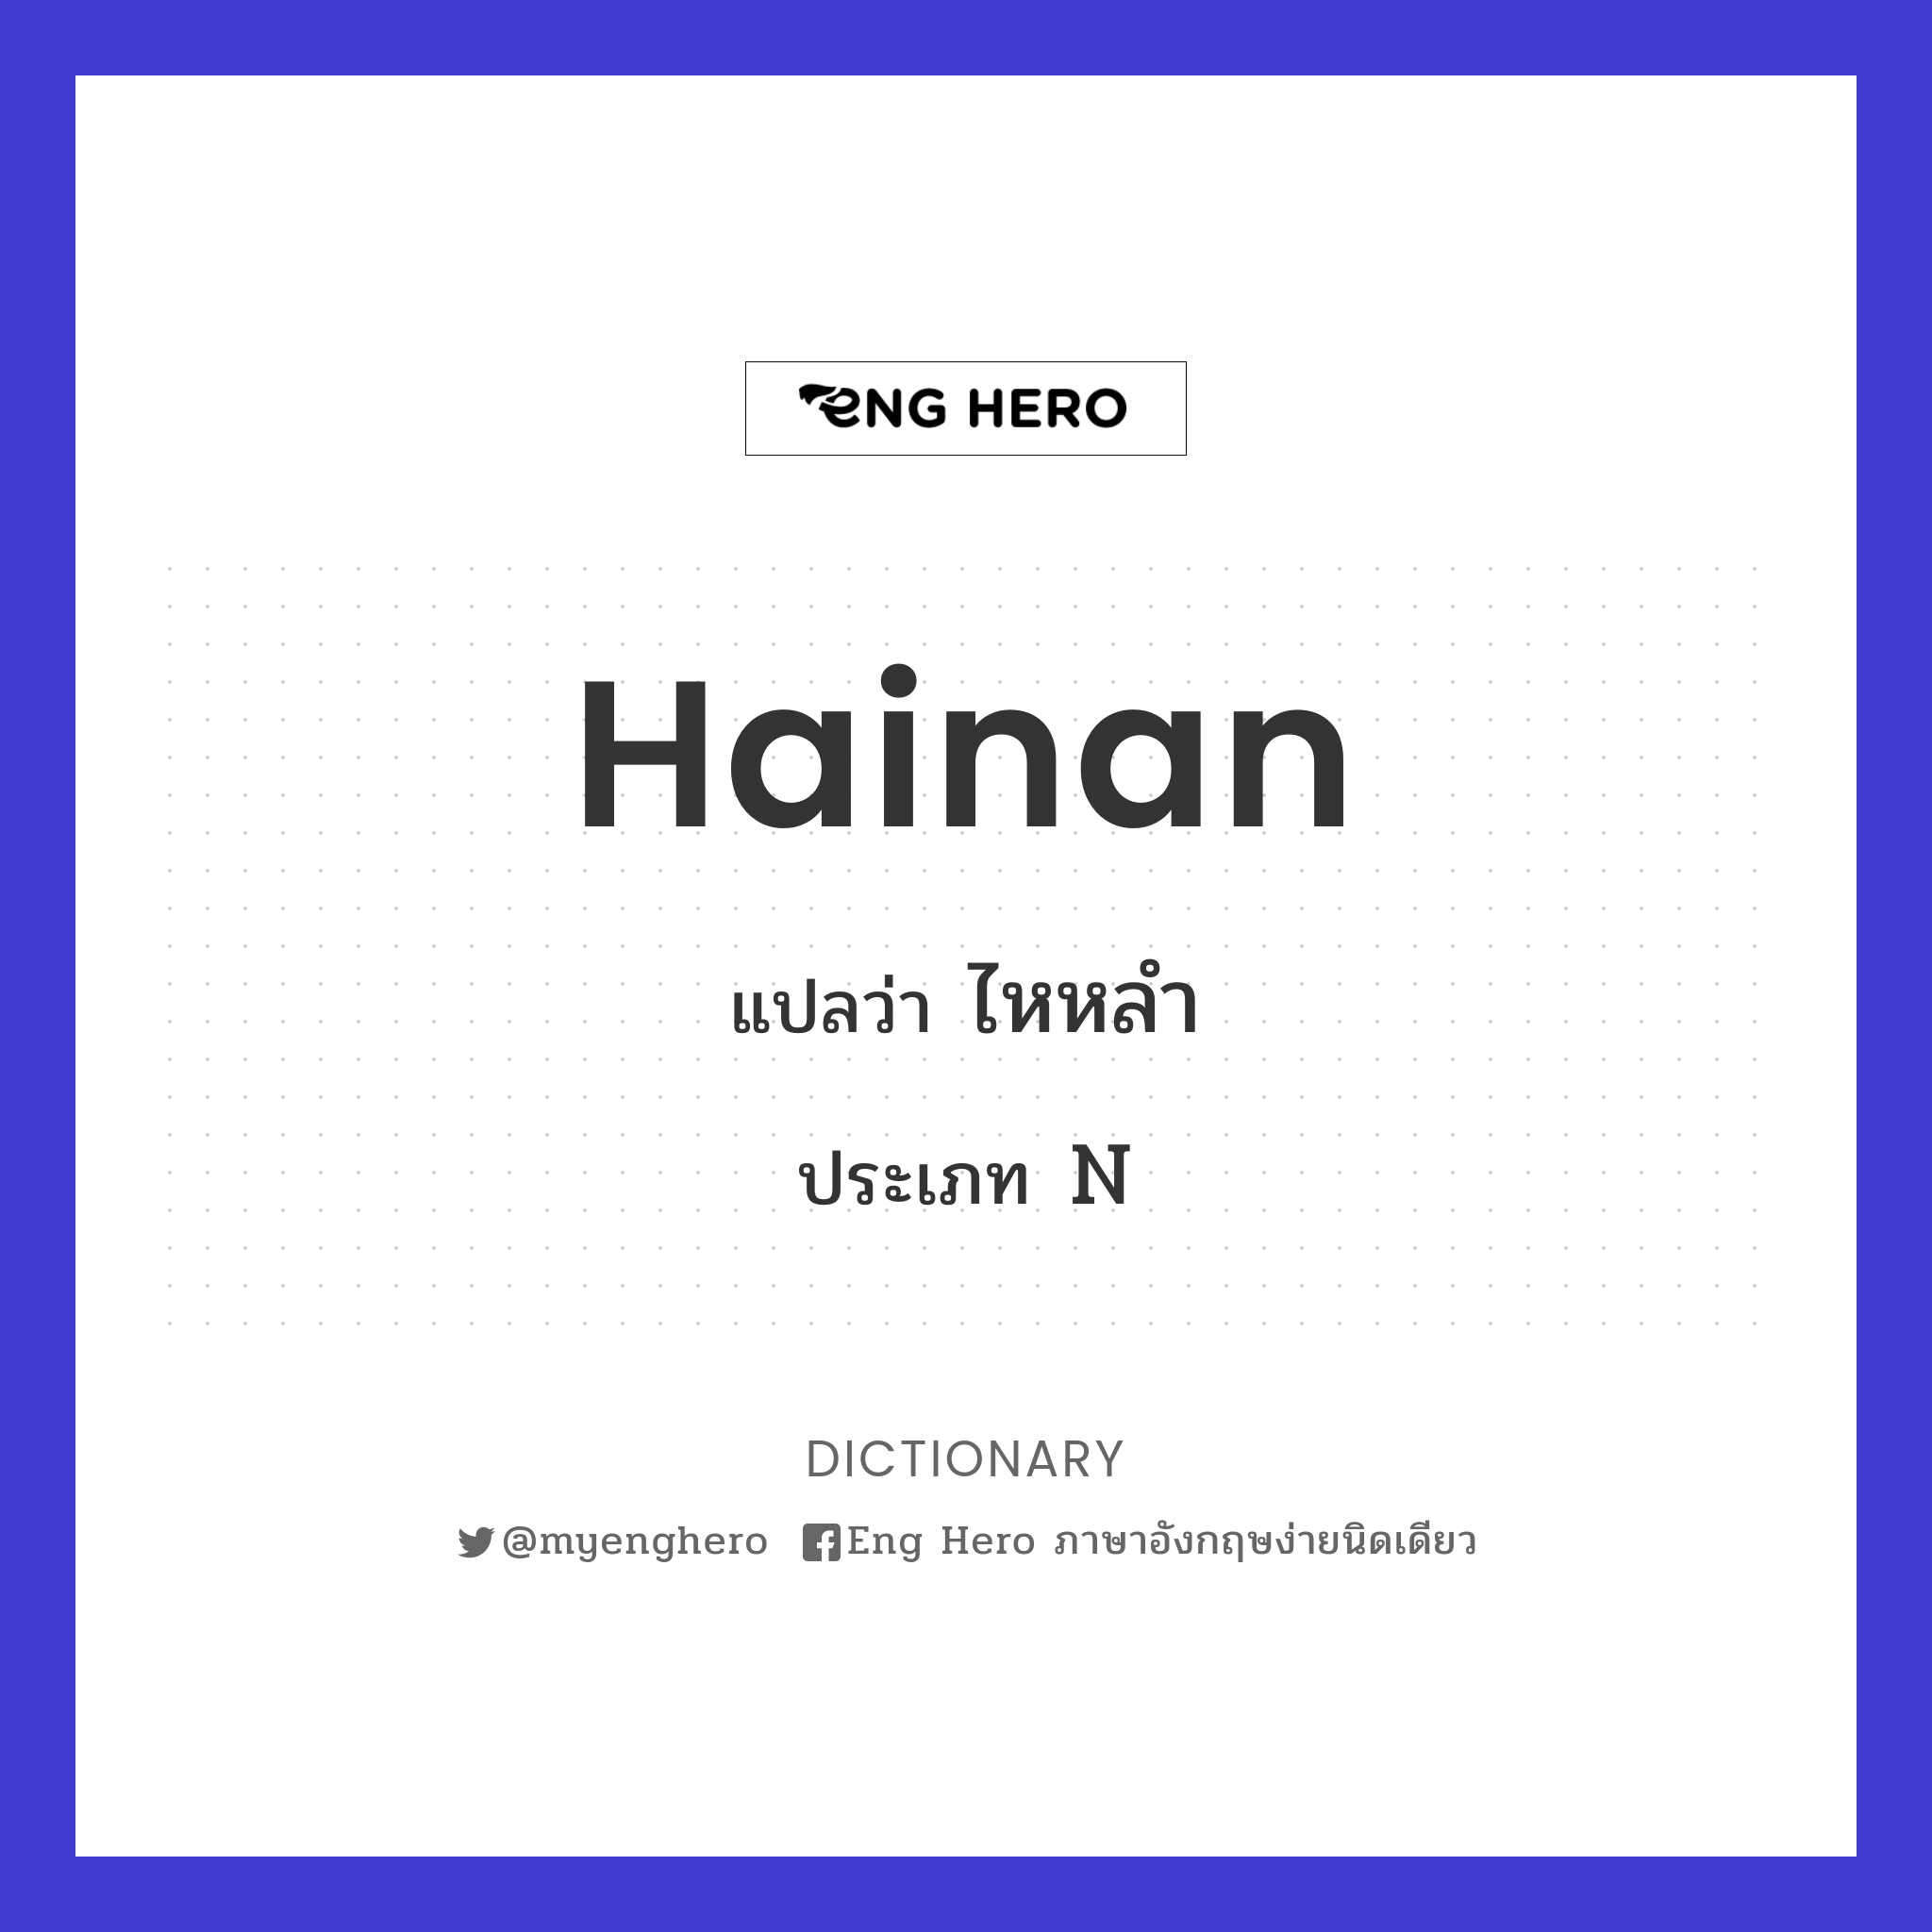 Hainan